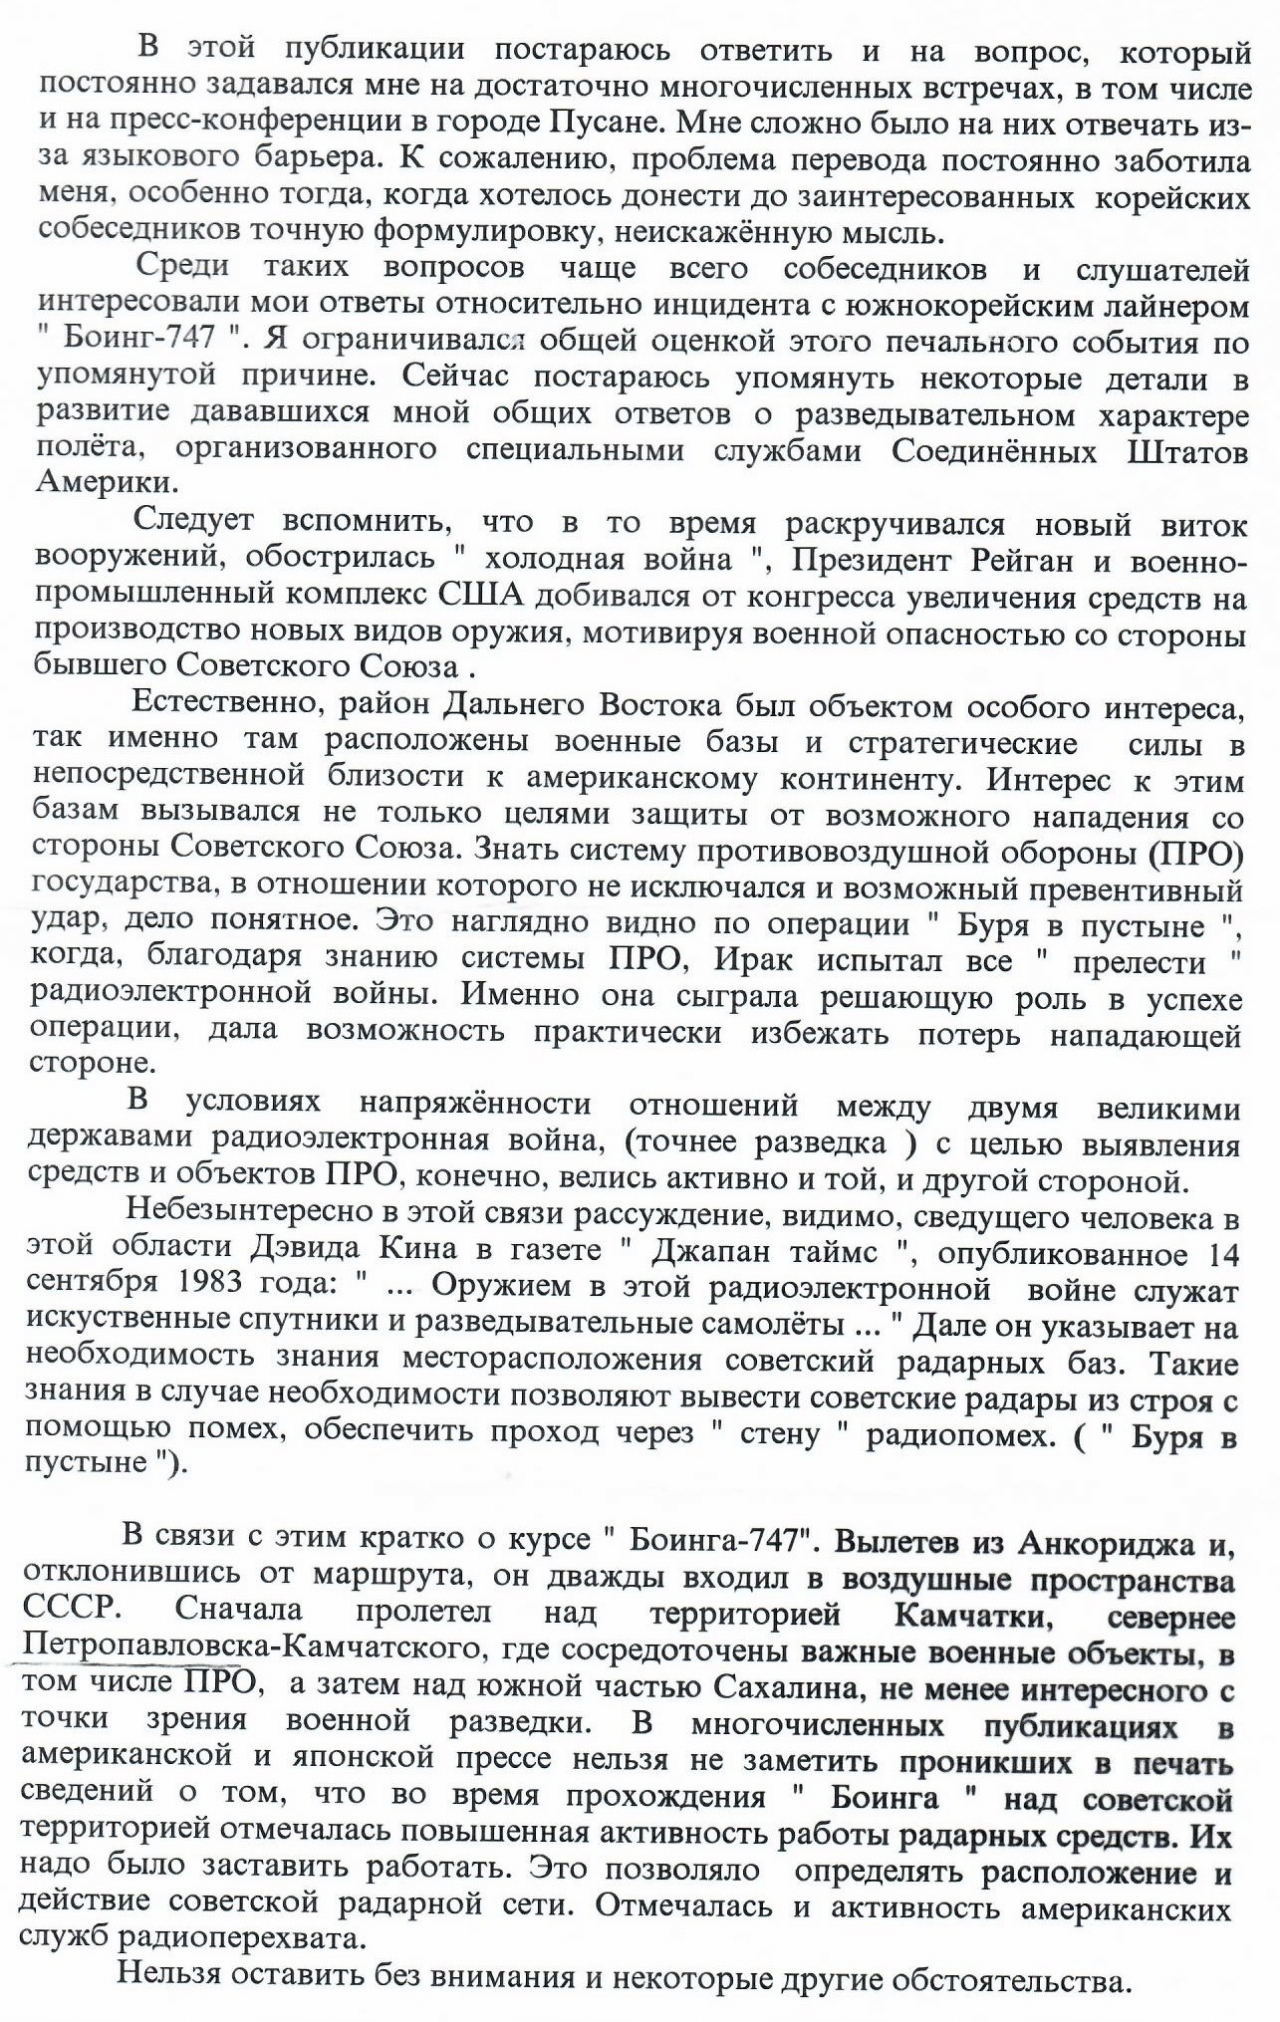 KGB 보스코브 부의장의 편지